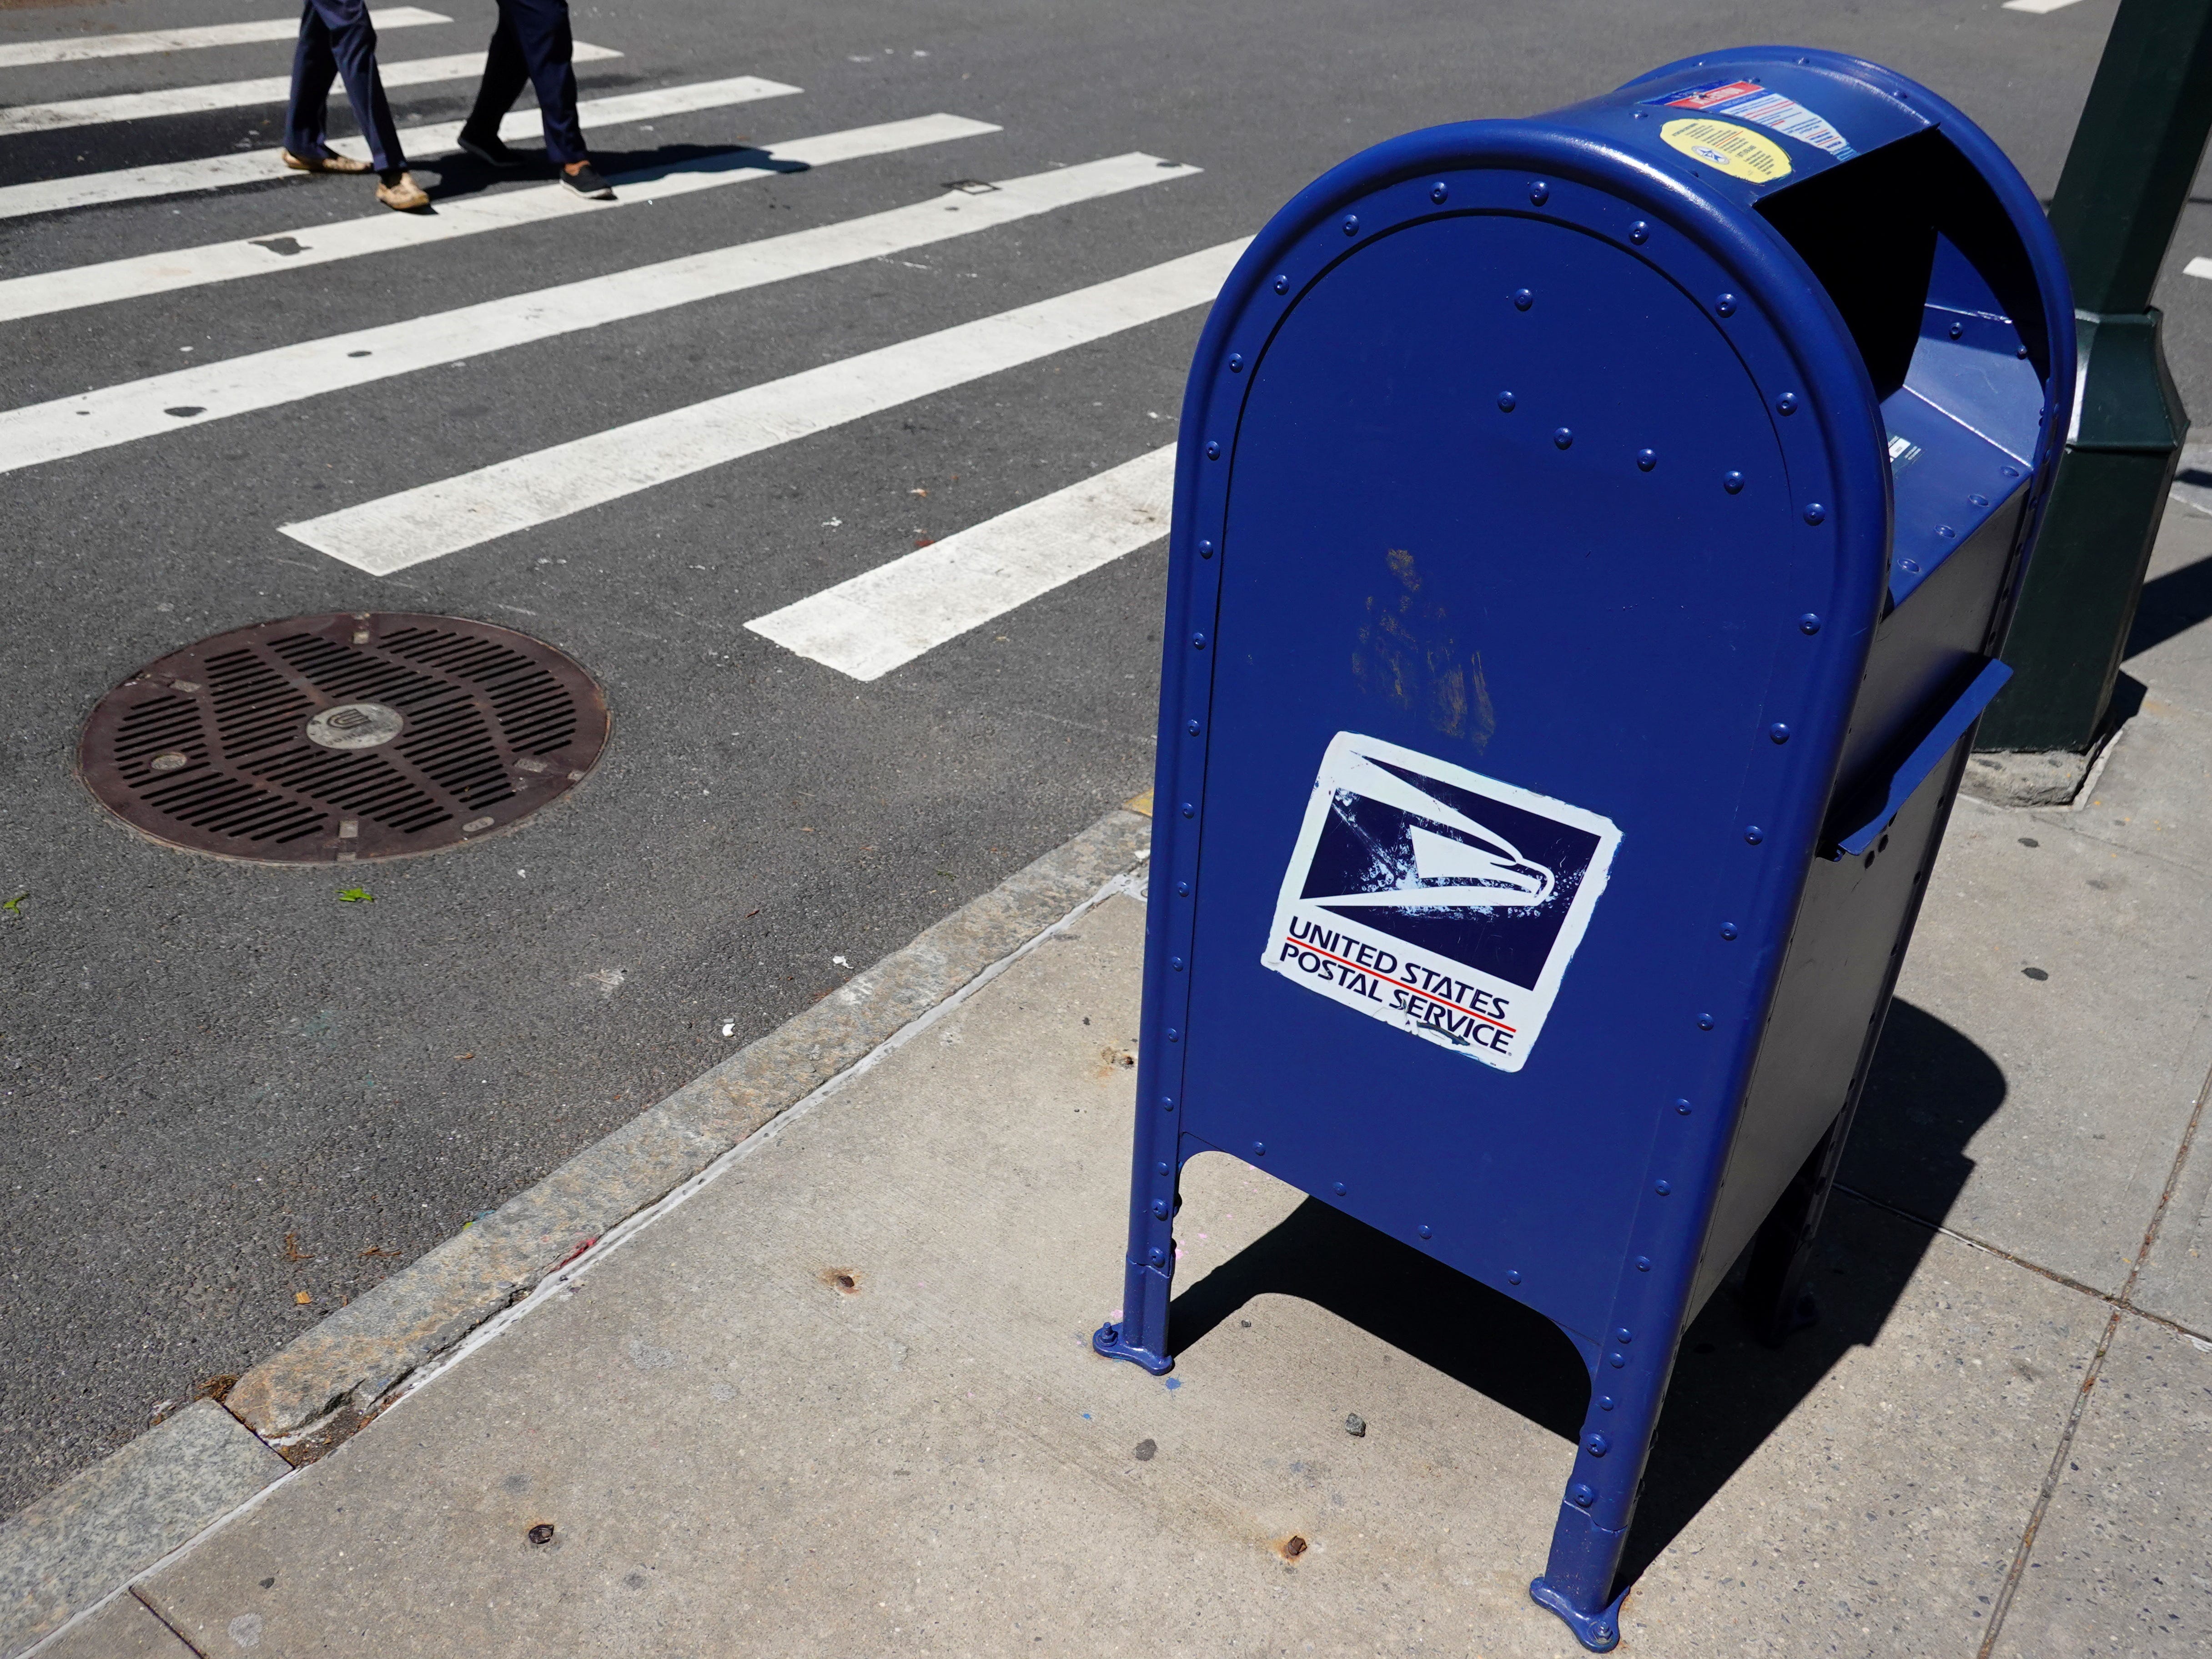 Ein blauer USPS-Briefkasten an einer Straßenecke.